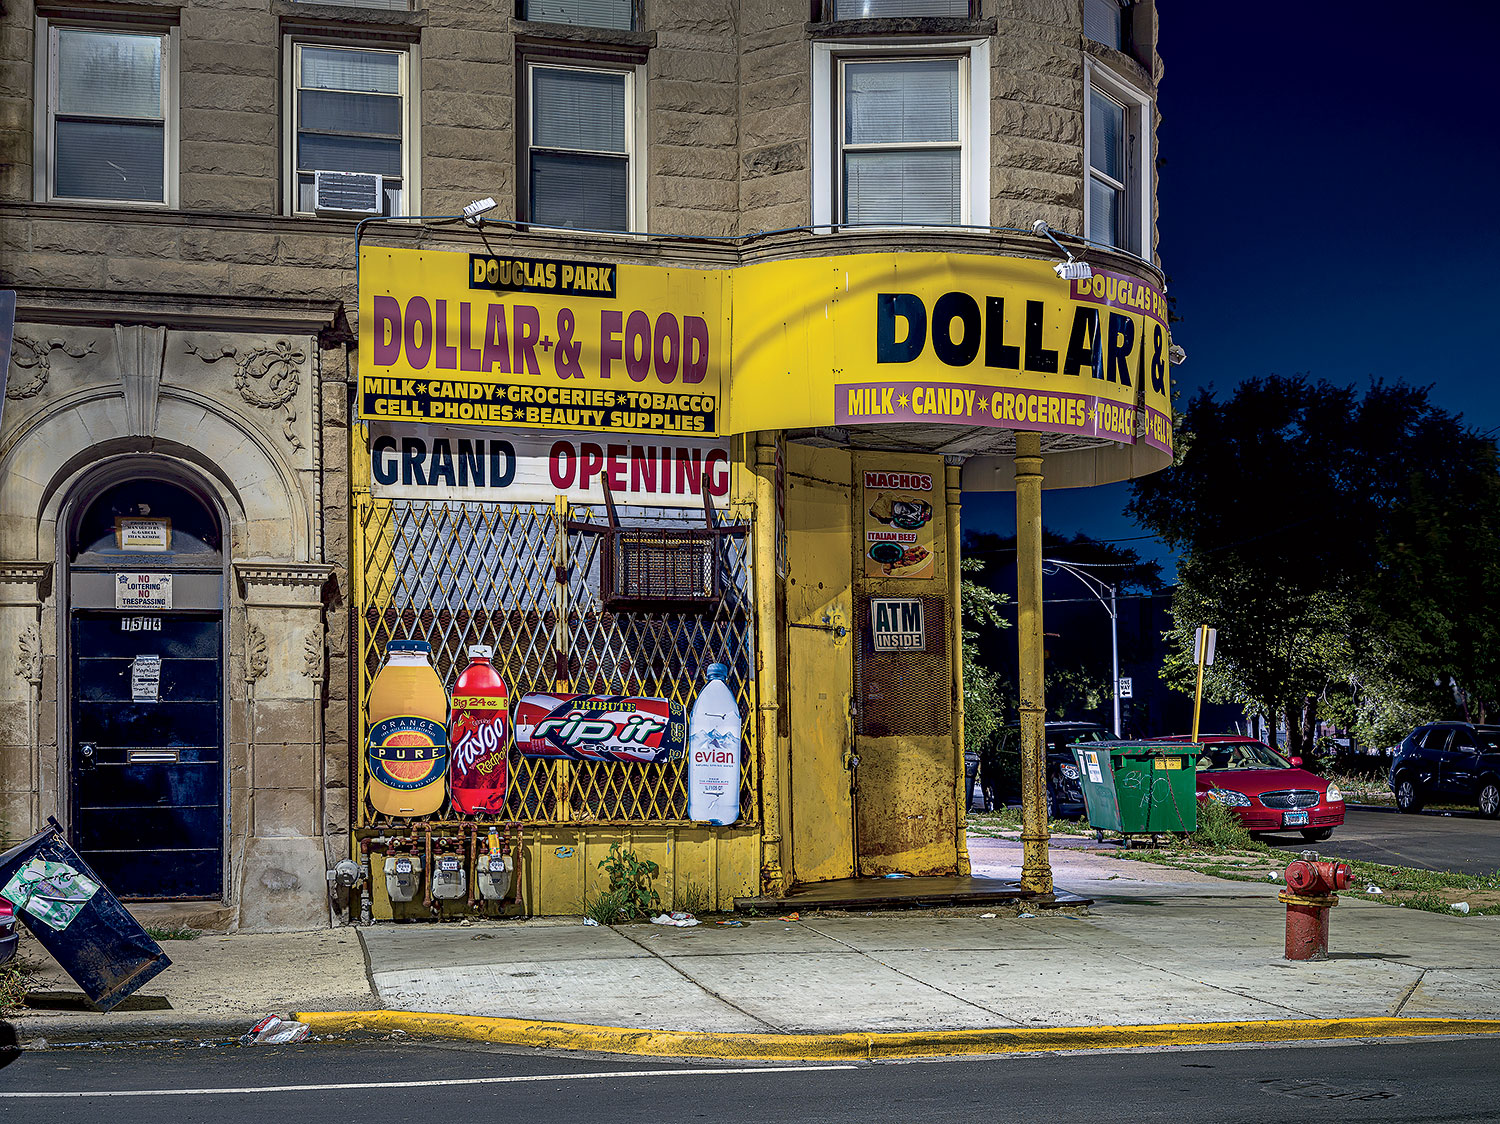 Douglas Park Dollar & Food storefront